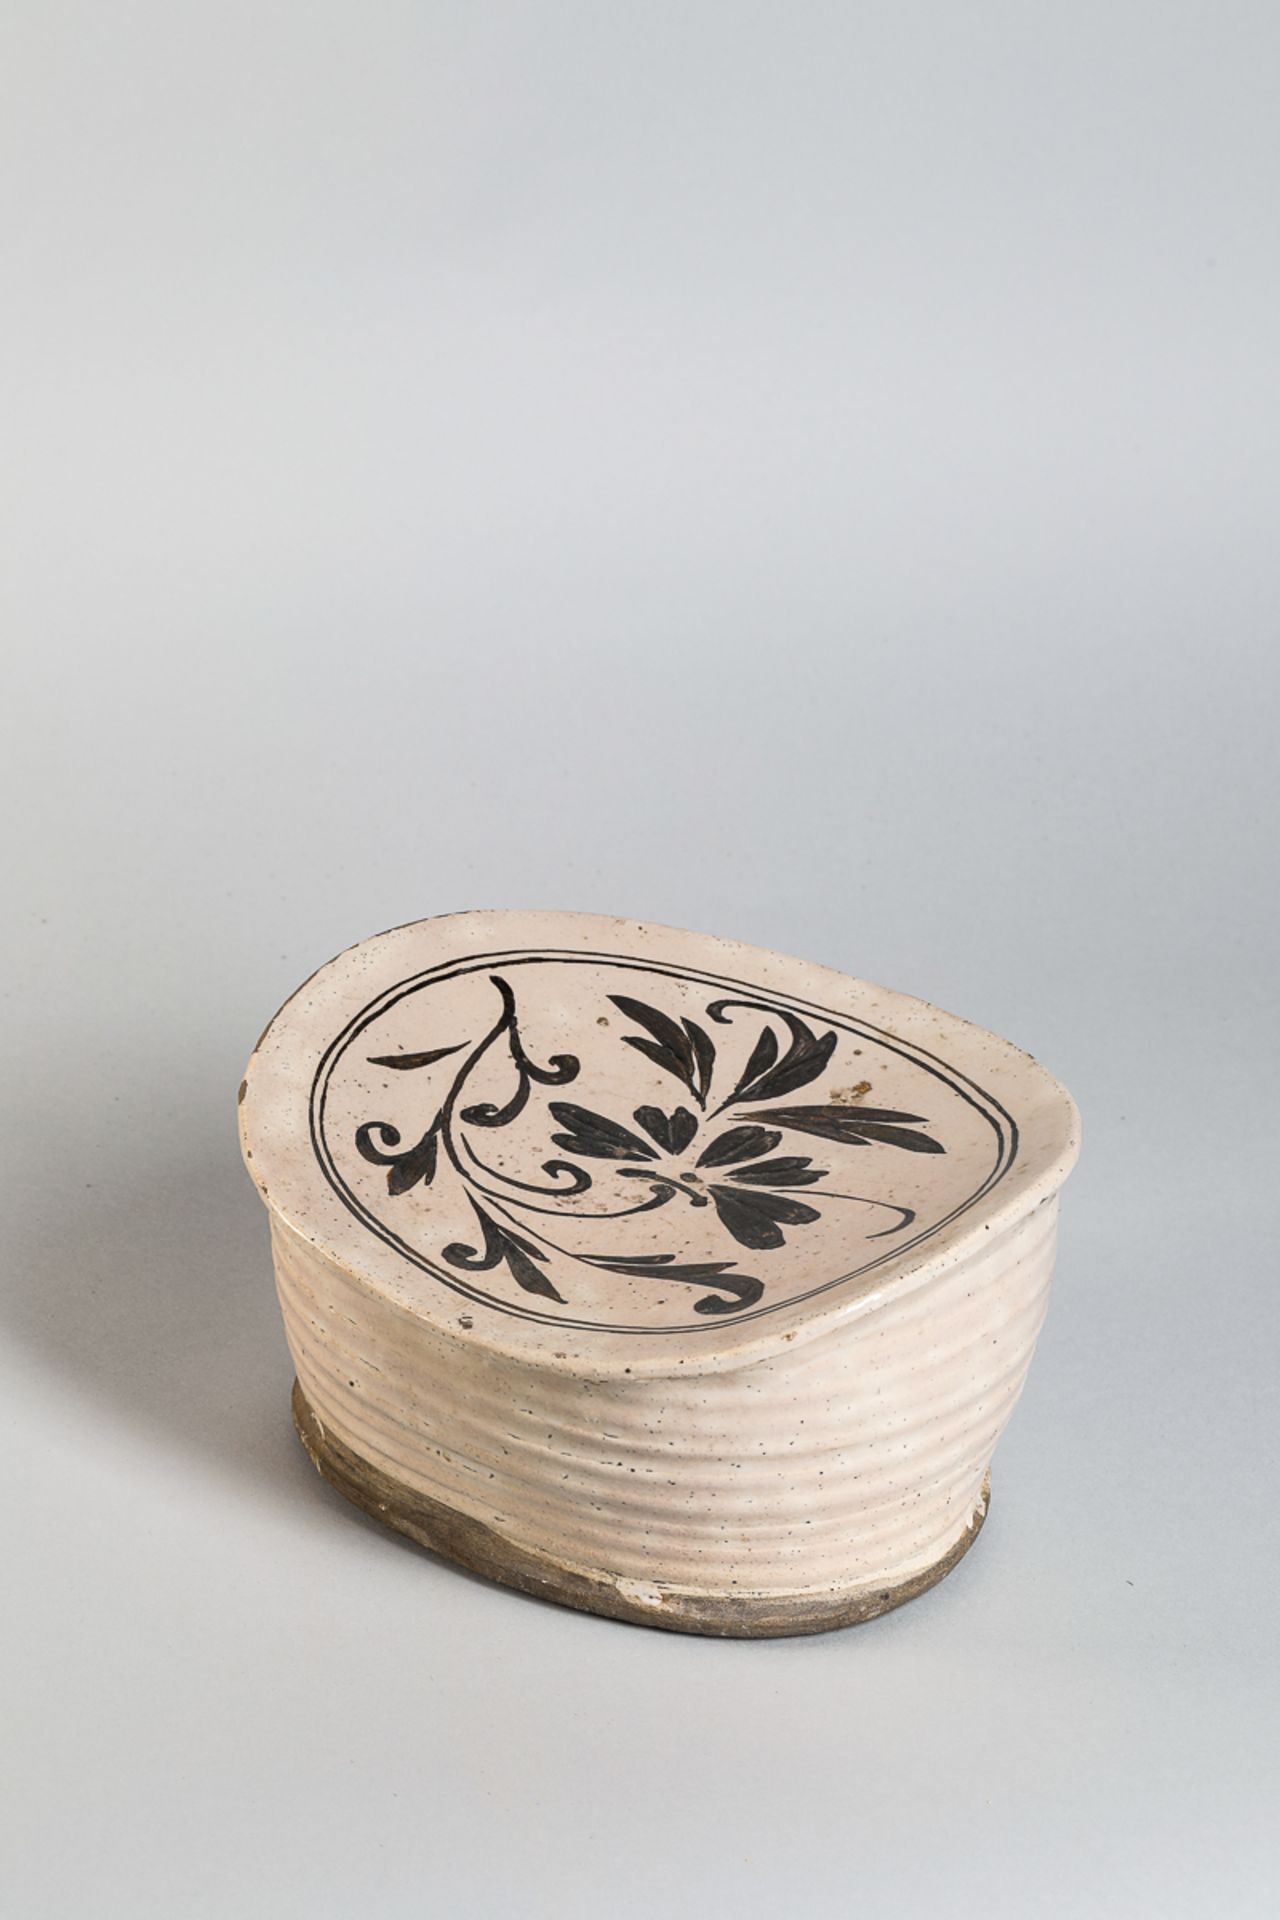 Repose nuque cizhu en céramique à décor floral brun sur glaçure monochrome beige crémeux Chine - Image 4 of 5